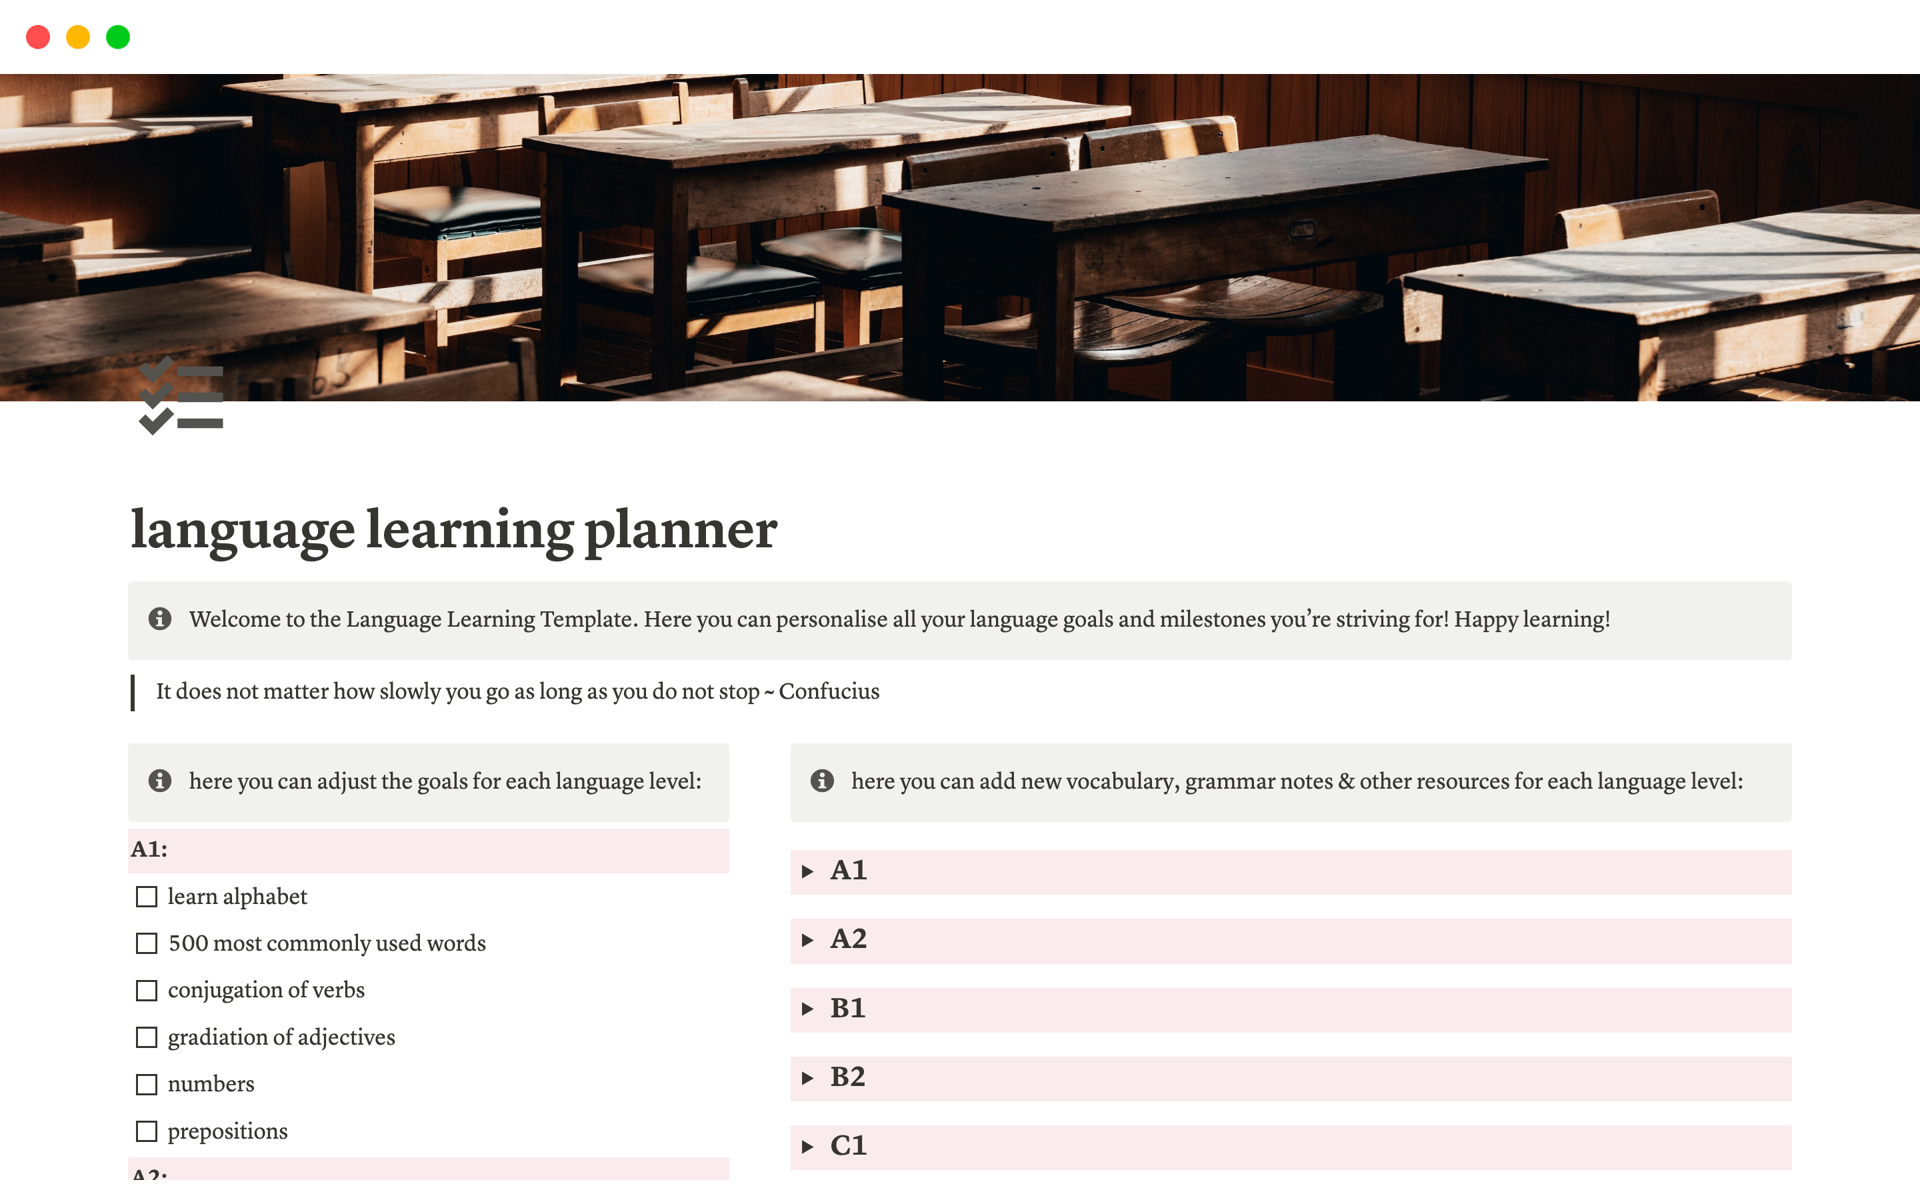 Uma prévia do modelo para language learning planner